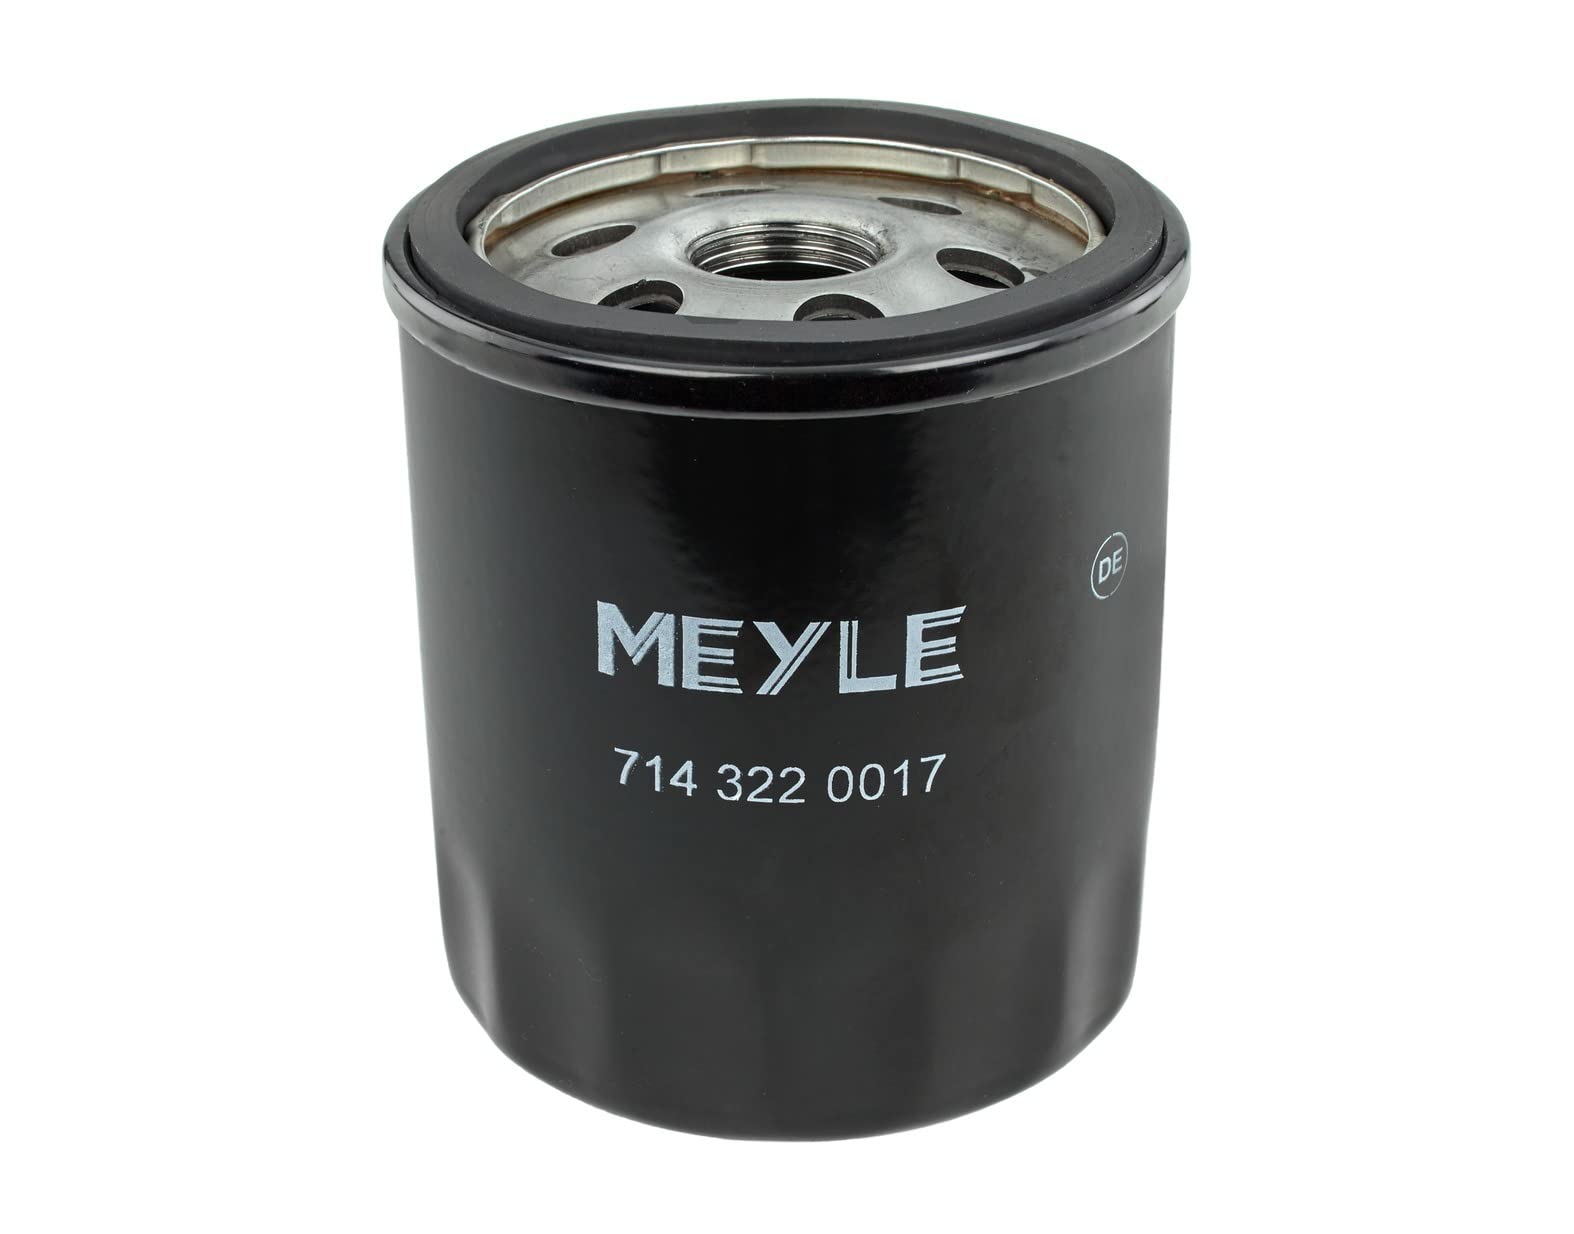 Ölfilter MEYLE-ORIGINAL: True to OE. von Meyle (714 322 0017) Filter Schmierung von Meyle